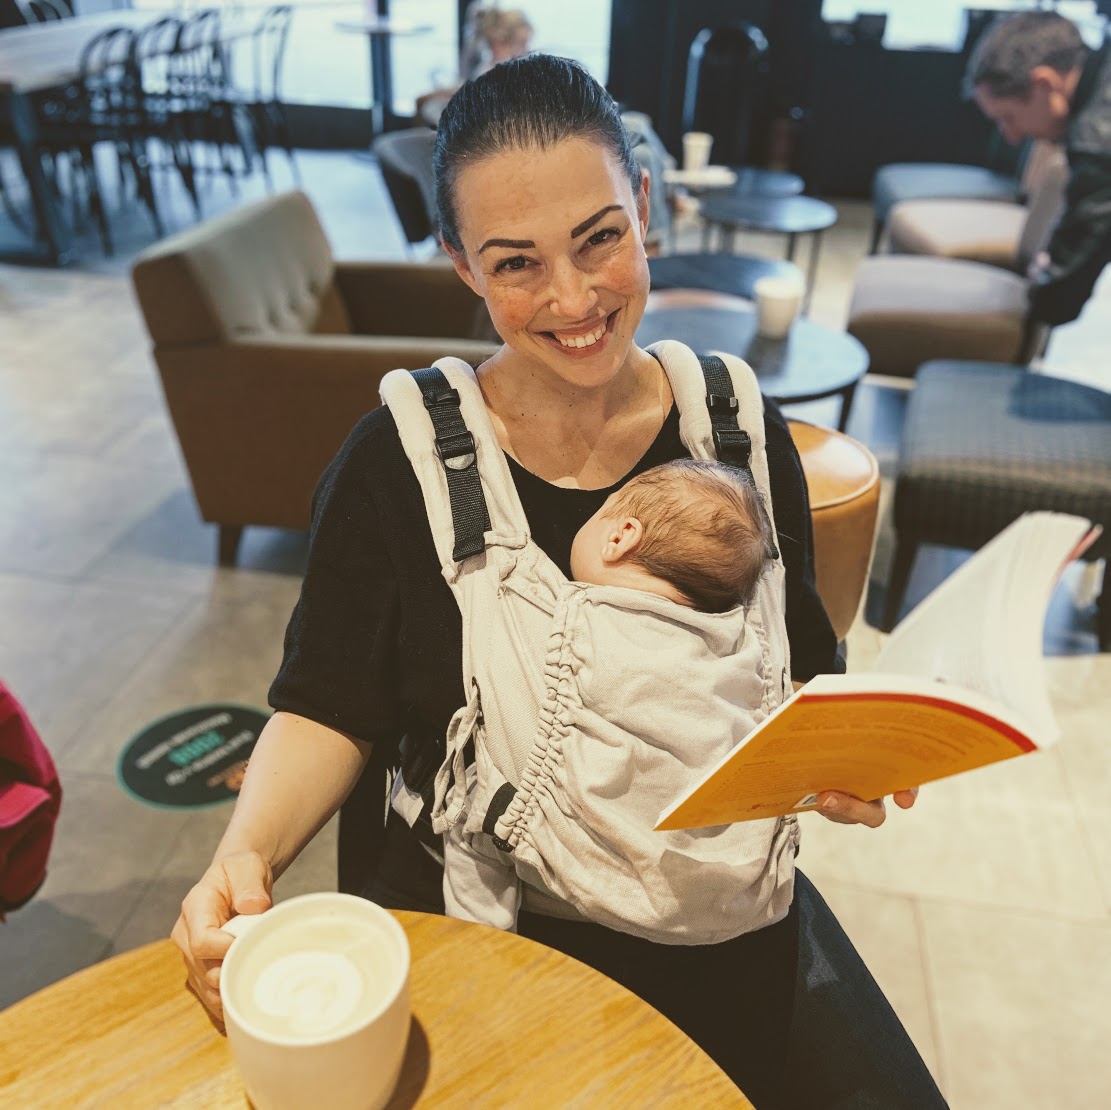 Fotka, jak sedím u stolu ve Starbucksu, na sobě mám nosítko s dvouměsíčním synem, který zrovna spinká. Jednou rukou si přidržuju hrnek s Café laté a v druhé držím knížku. Směju se do foťáku. 